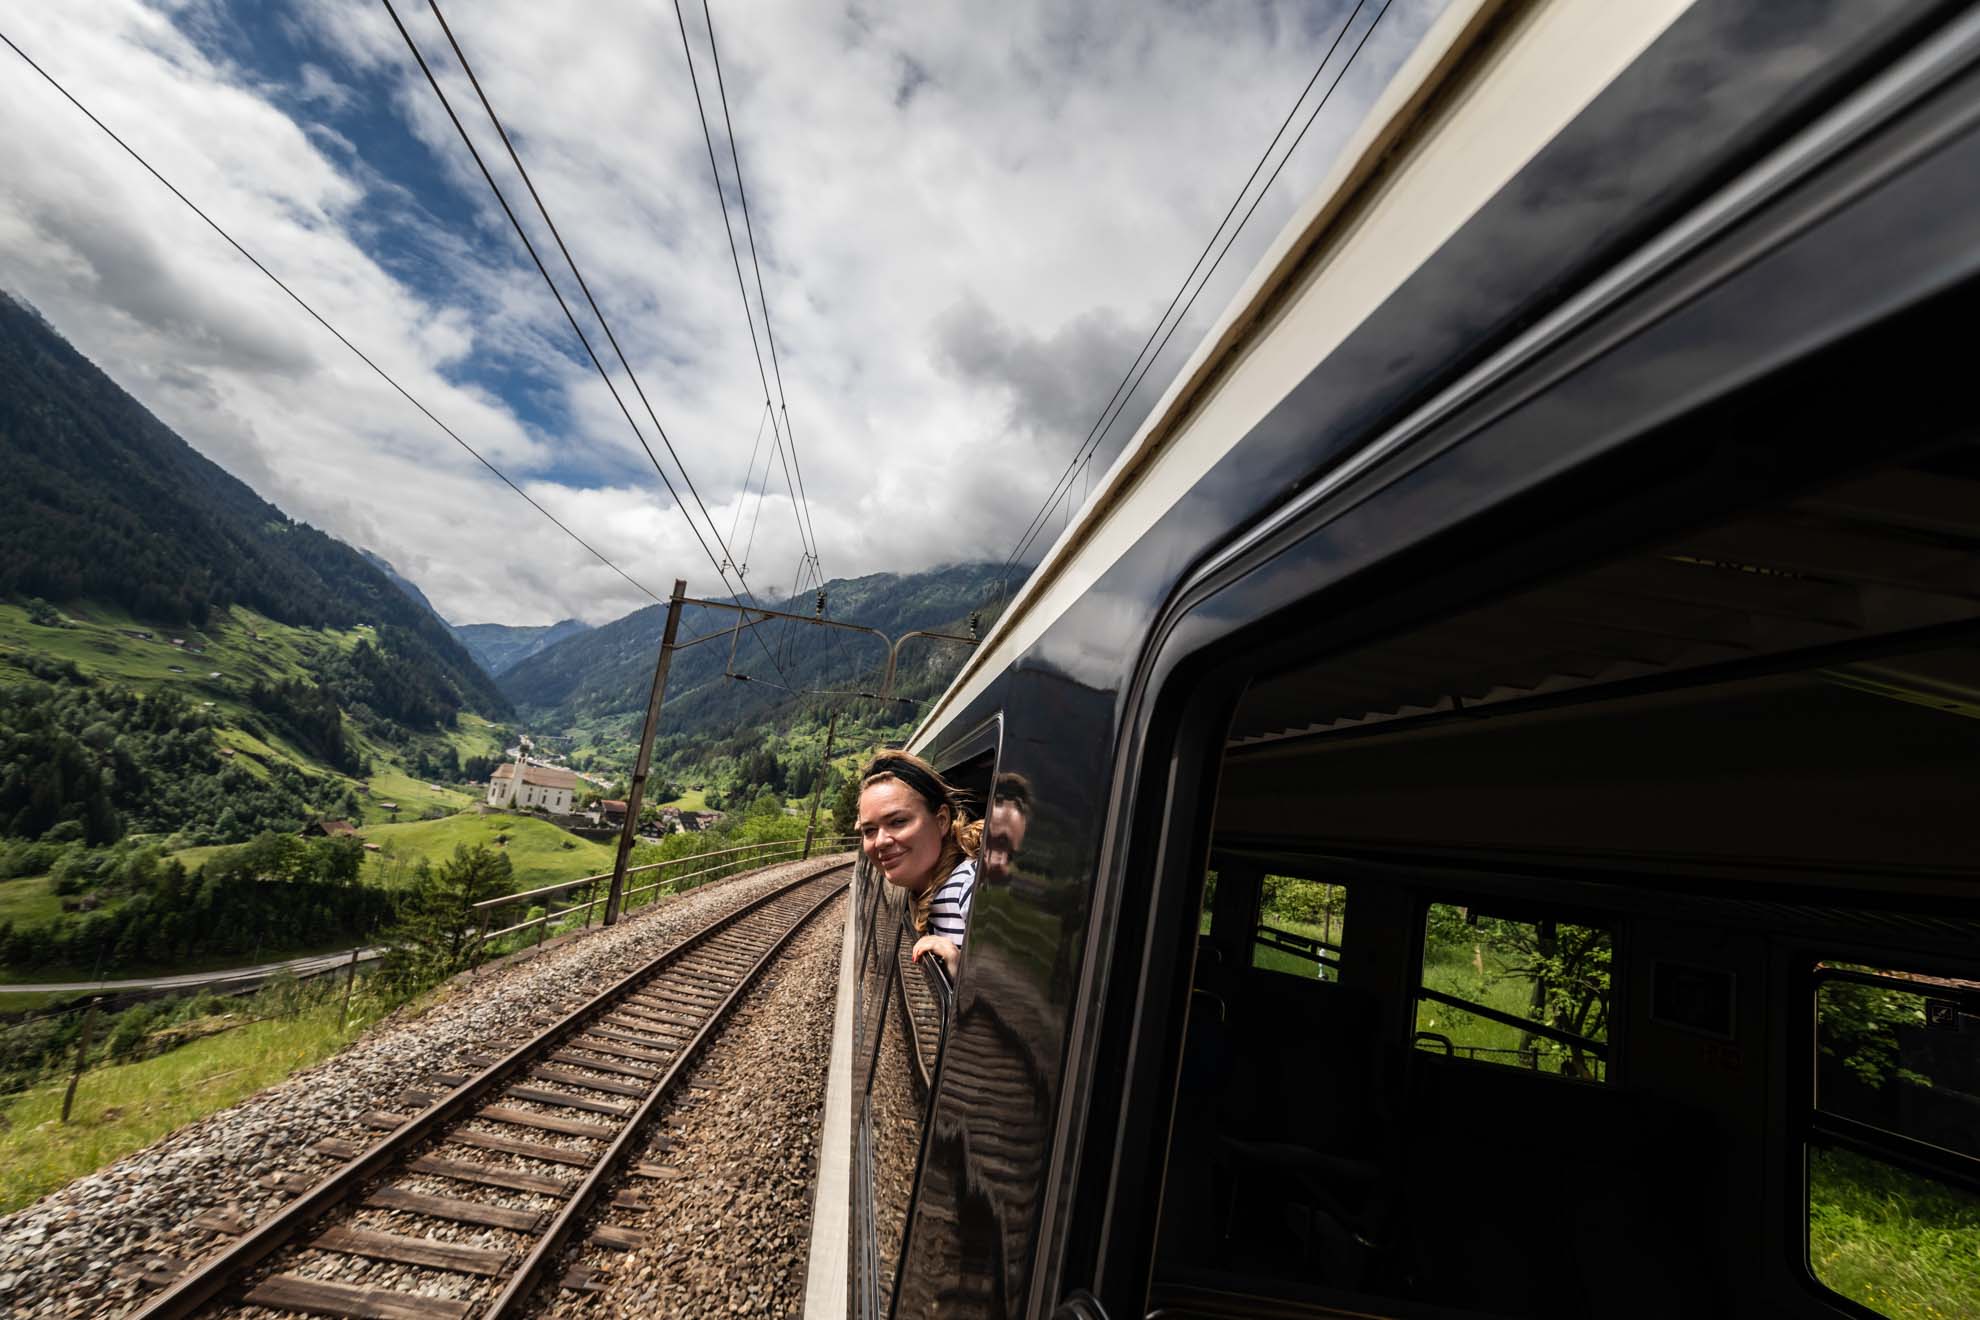 Szwajcaria; Szwajcaria pociągami; Grand Train Tour of Switzerland; najpiękniejsze trasy kolejowe w Szwajcarii; Ekspres Panoramiczny Gotarda; Gothard Panorama express; pociąg panoramiczny; pociągi panoramiczne Szwajcaria; przewodnik Szwajcaria; ebook Szwajcaria;